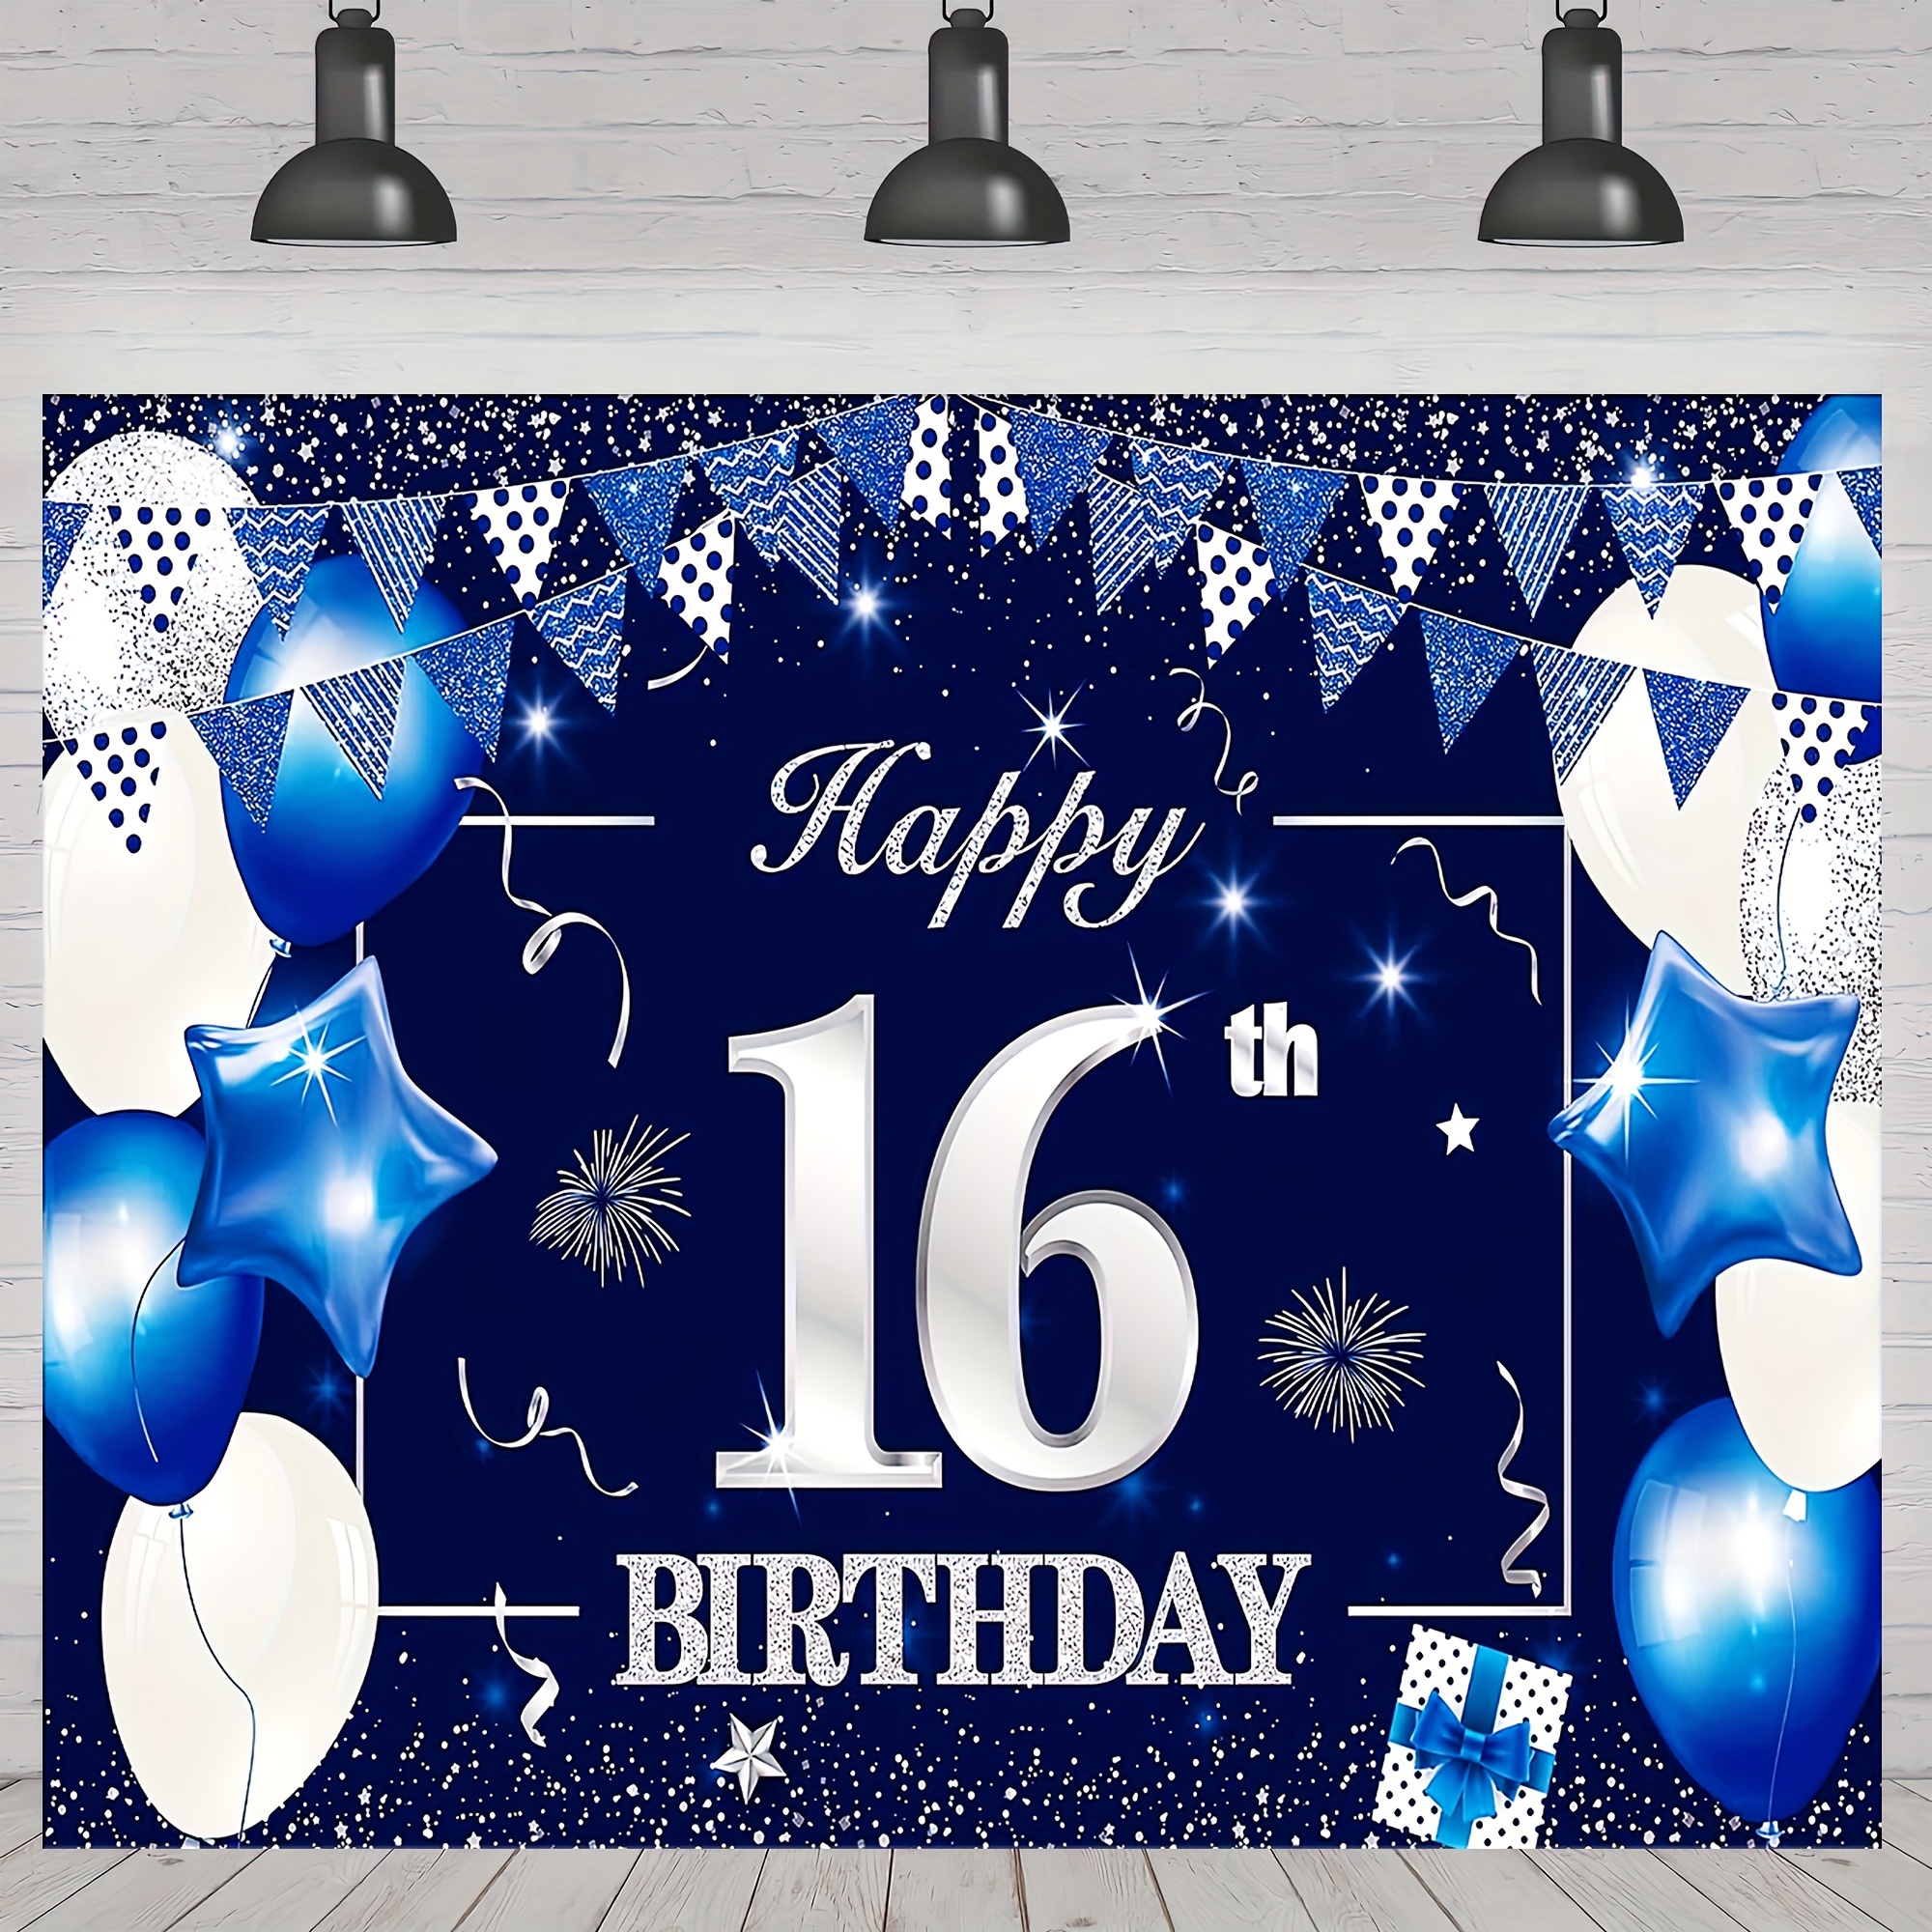 Feliz 9 cumpleaños: Libro De Visitas 9 Años Feliz Cumpleanos para Fiesta  ideas regalos decoracion accesorios eventos firmas fiesta nina nino ninos